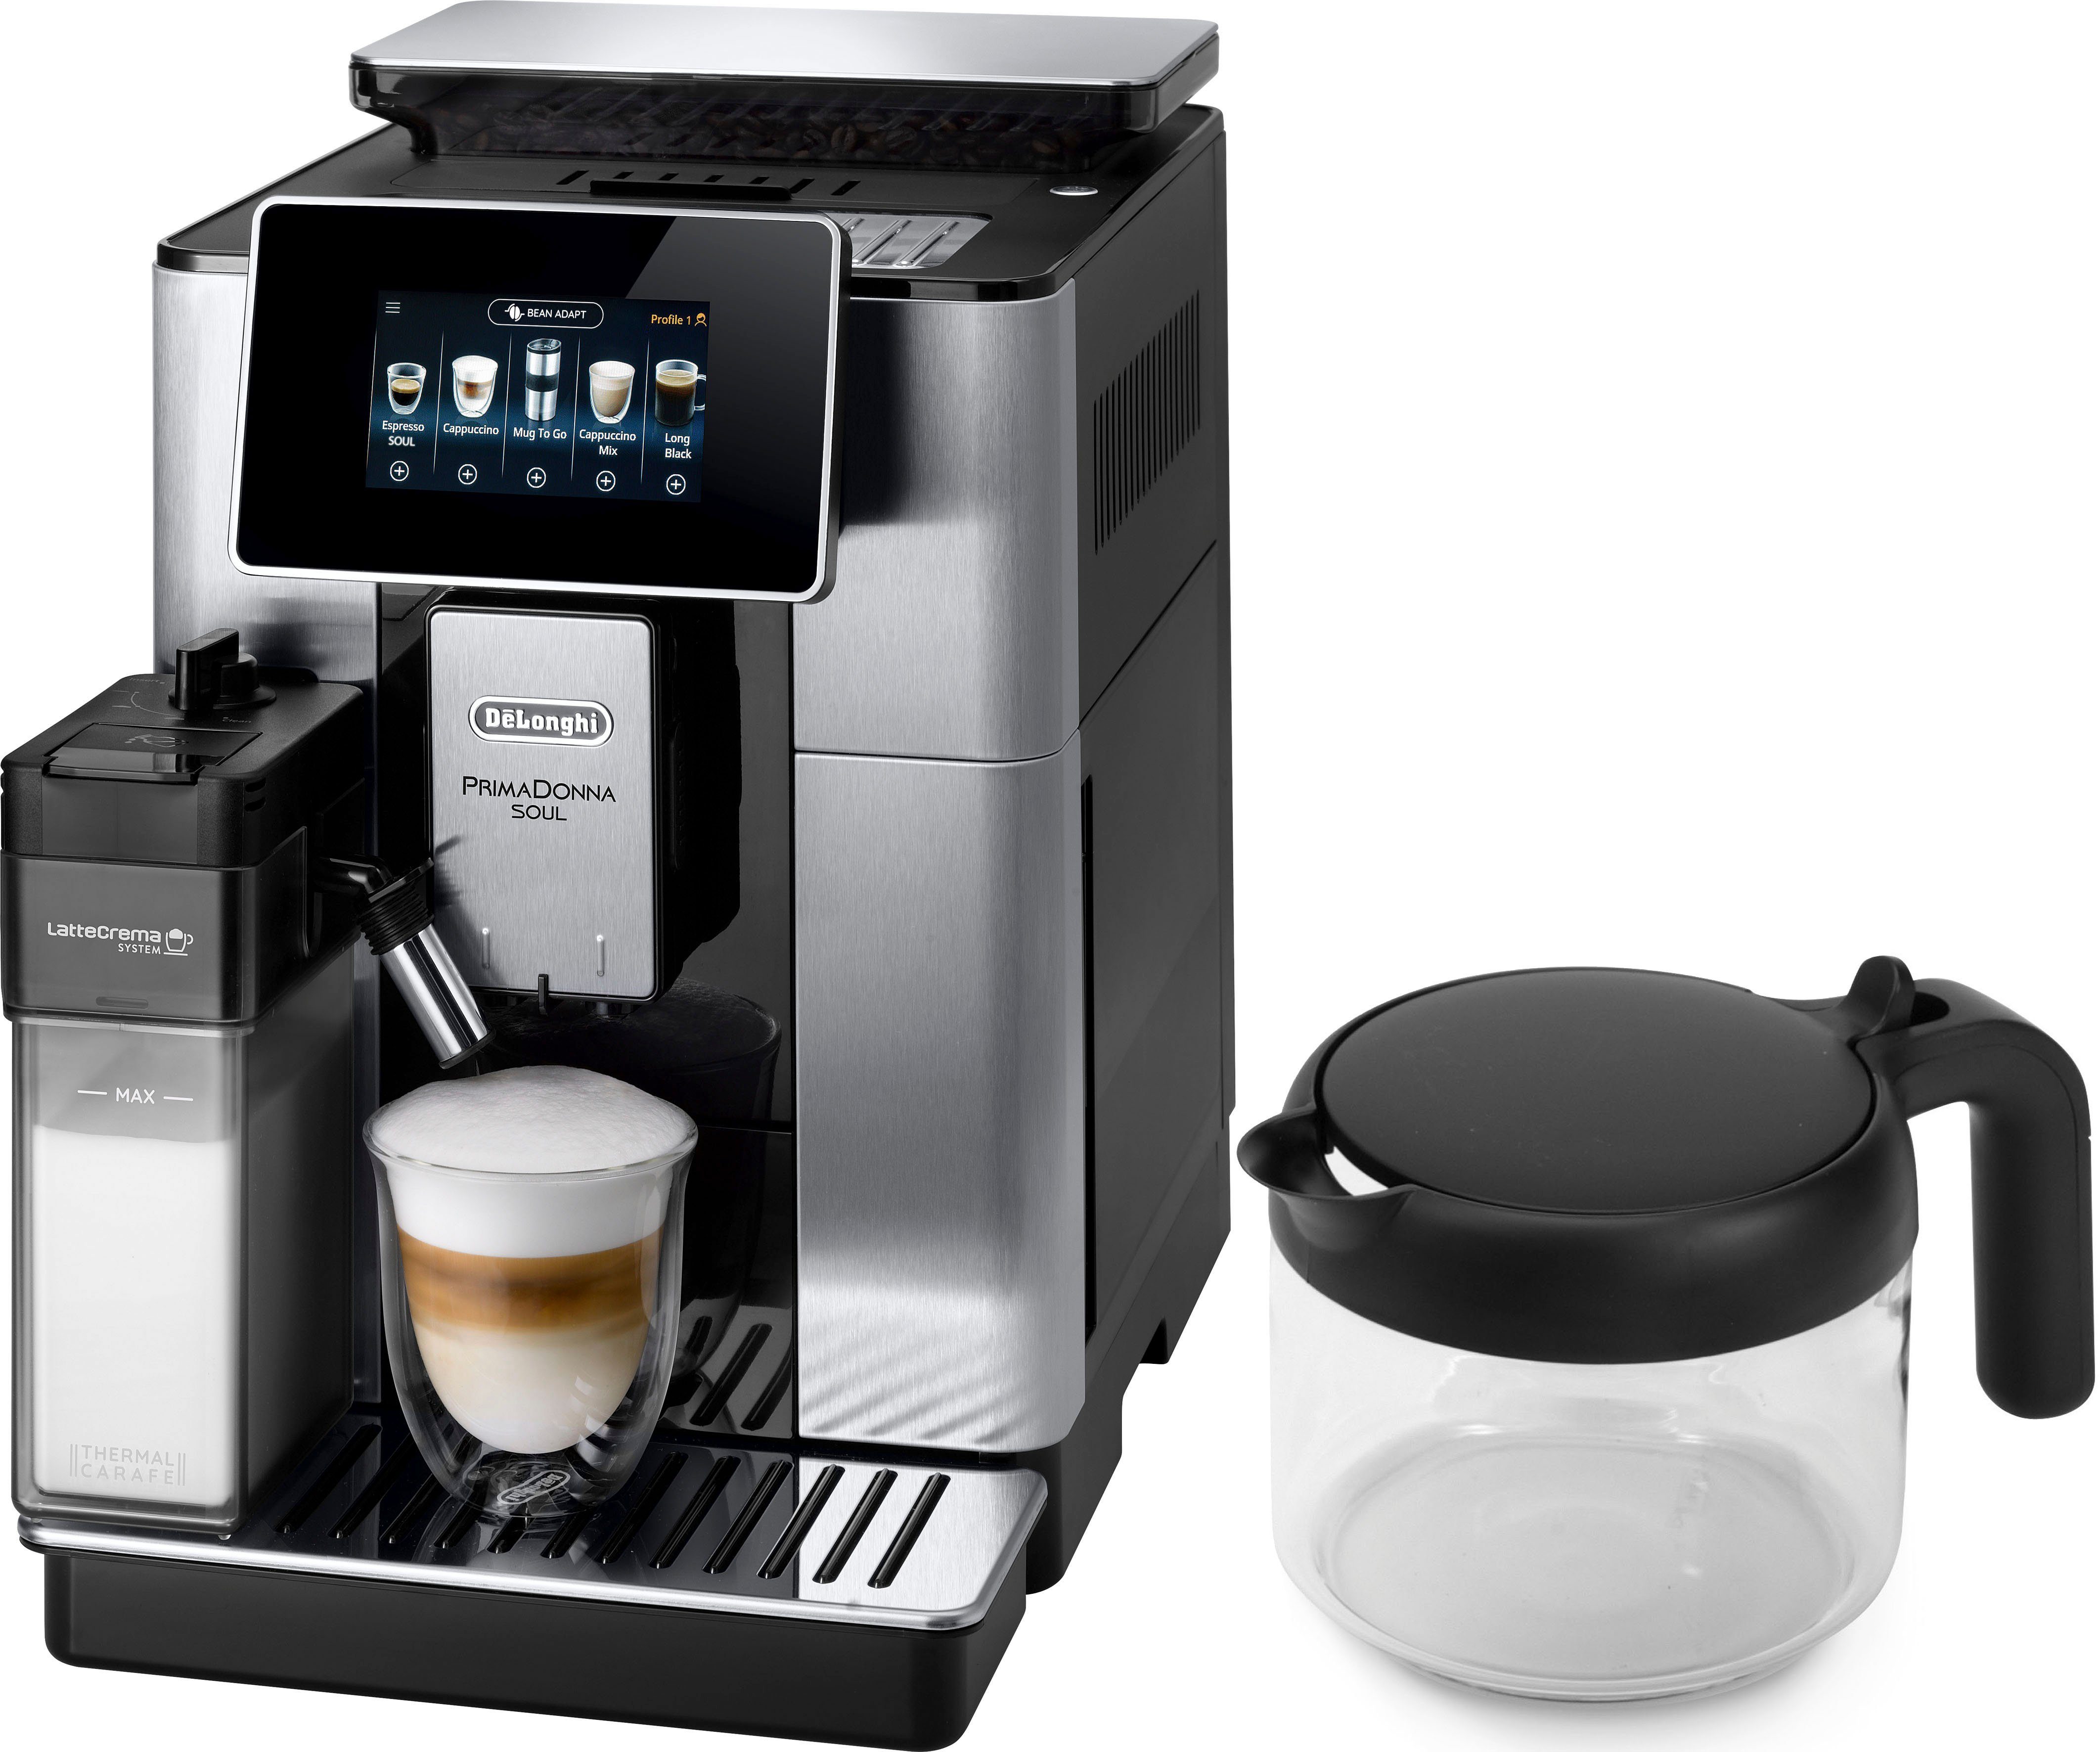 Volautomatisch koffiezetapparaat PrimaDonna Soul ECAM 610.75.MB met koffiekanfunctie, inclusief koffiepot t.w.v. € 29,99 online |